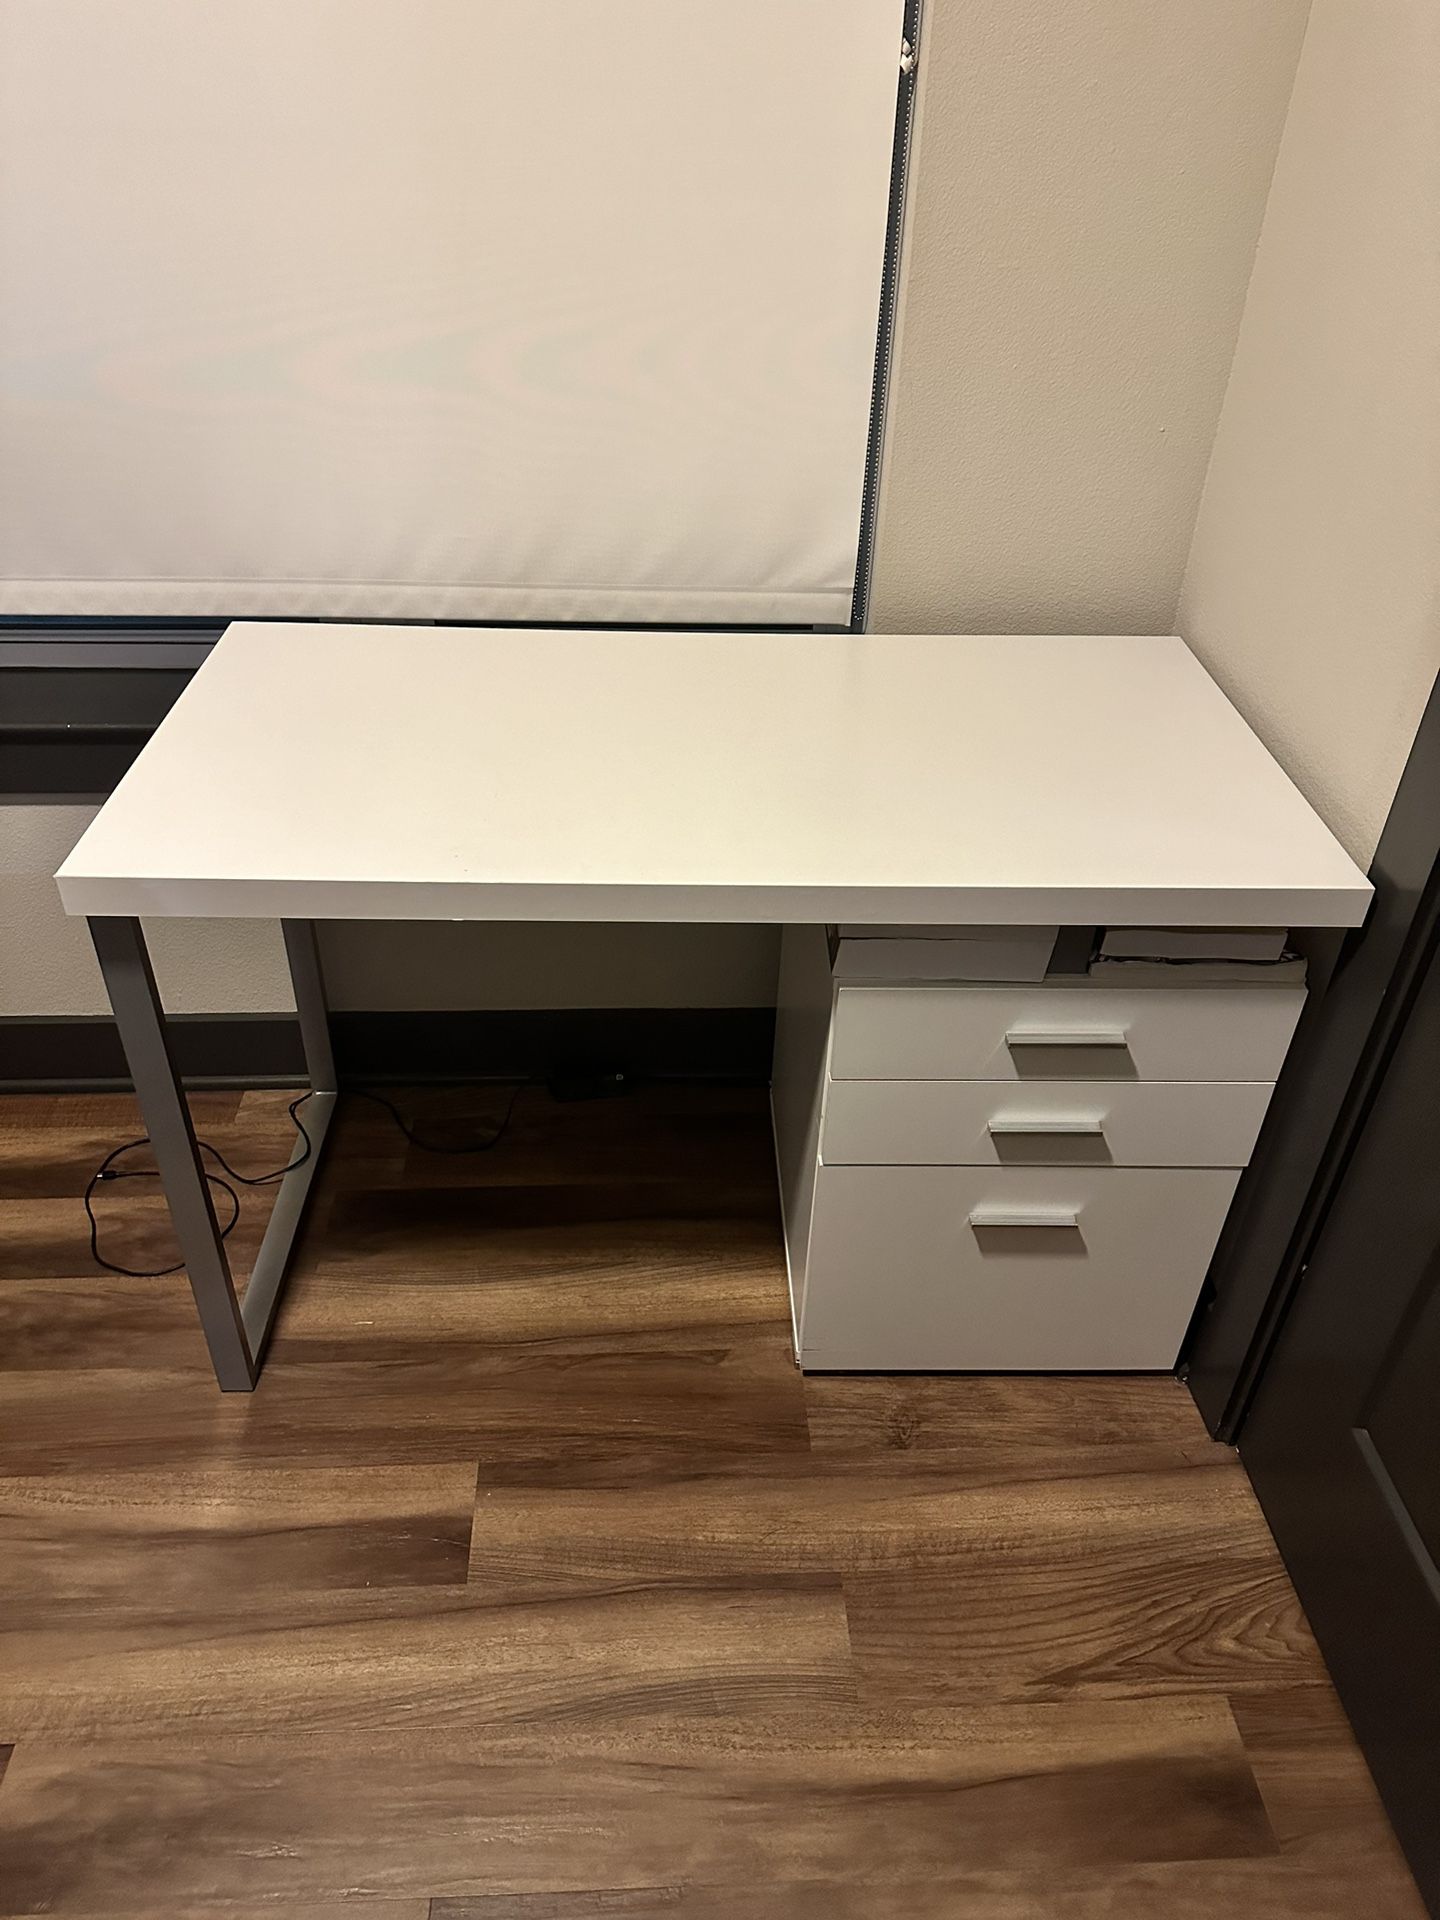 3-Drawer Office Desk - $100 OBO